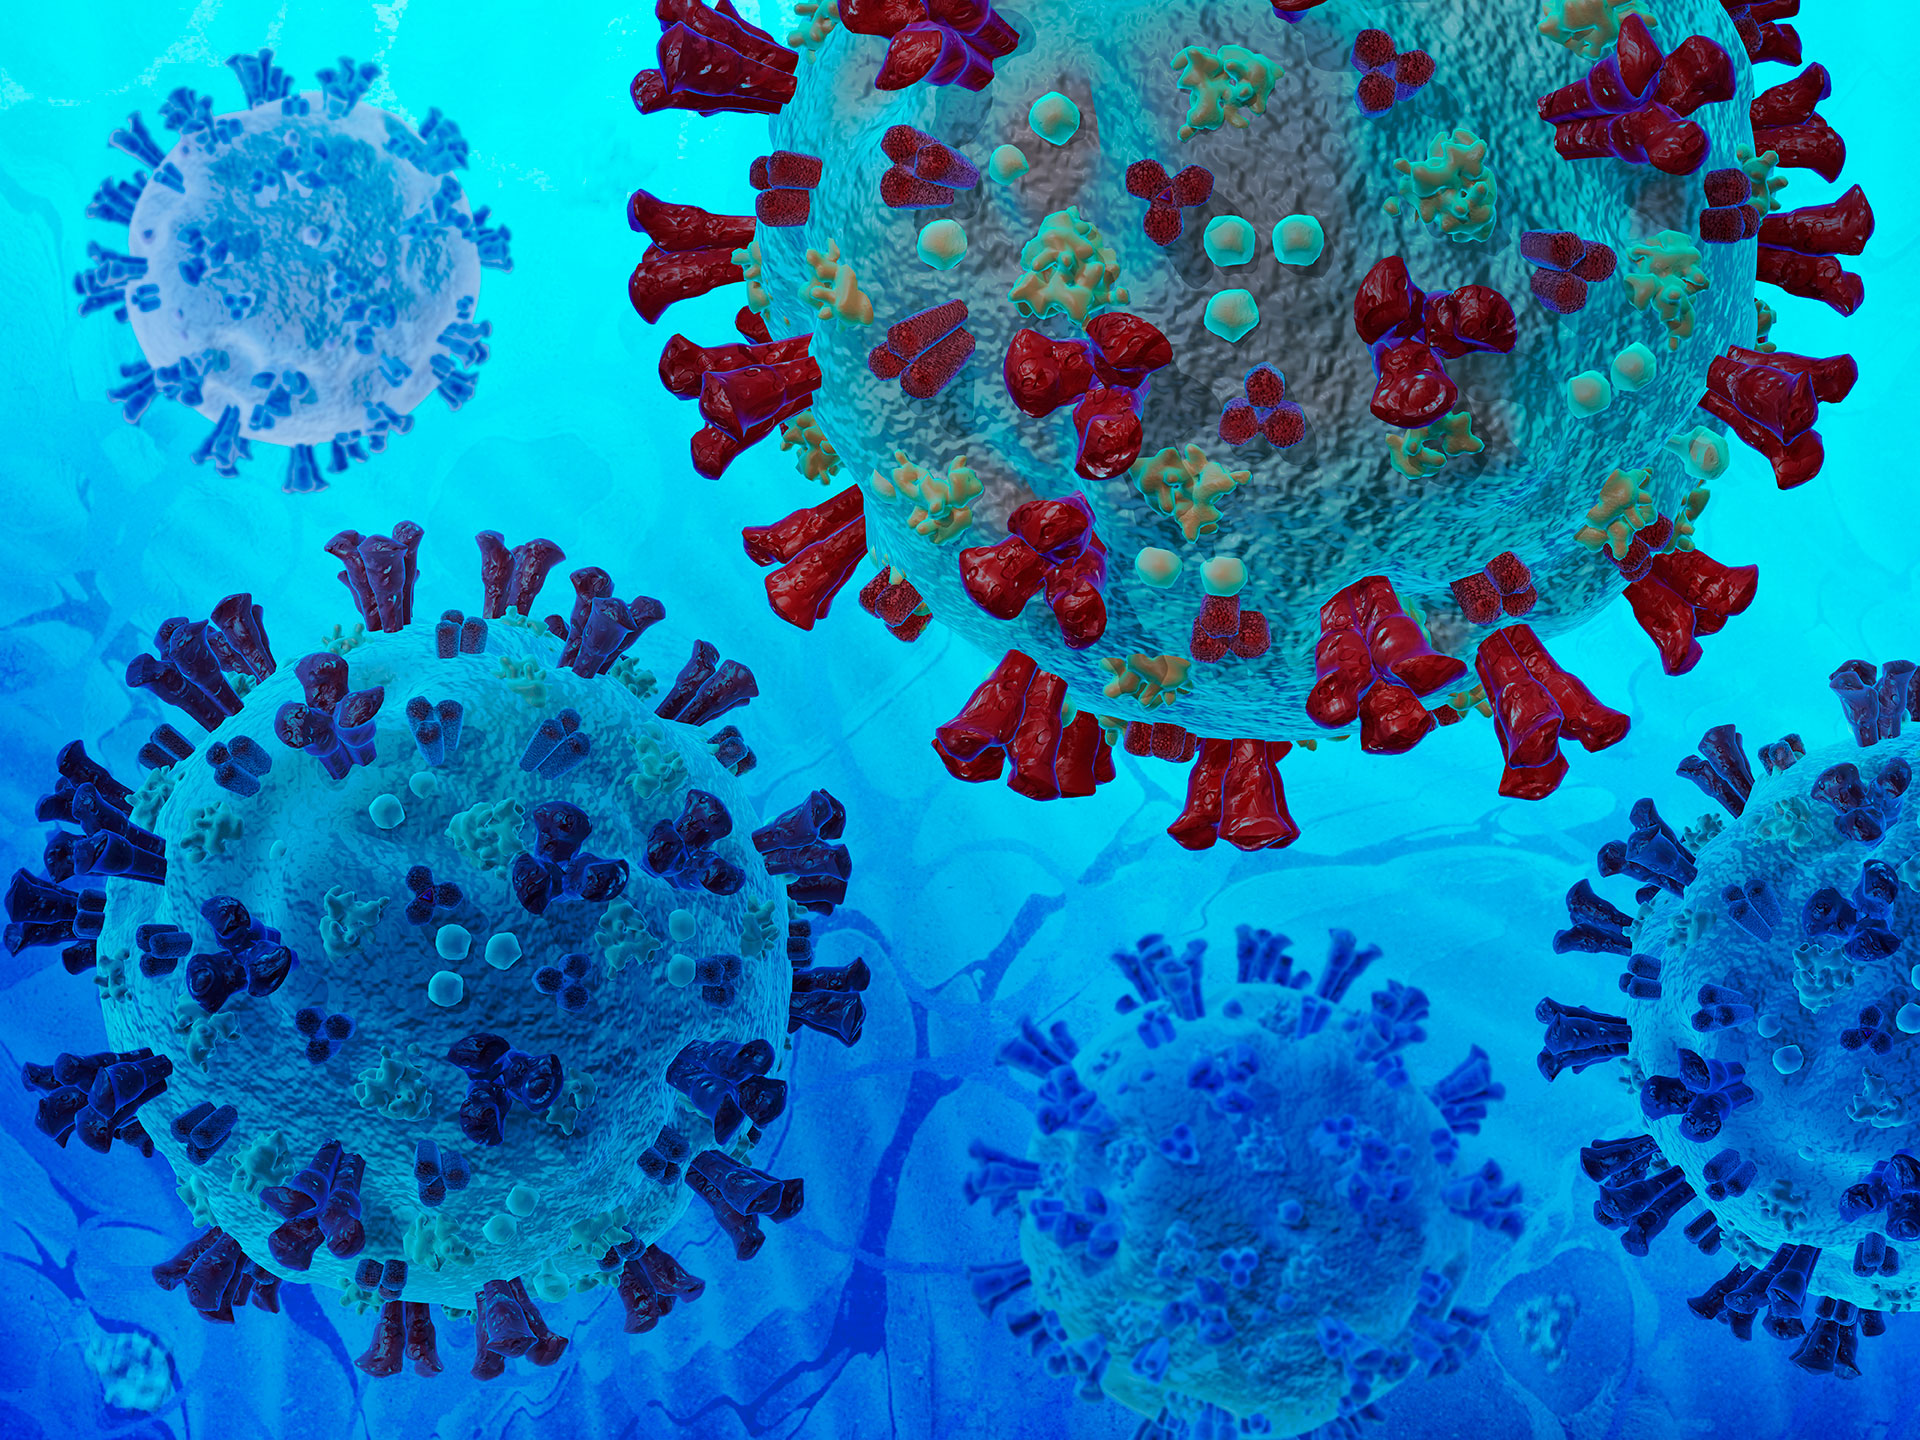 Laboratorios científicos del mundo reportan la vigilancia del genoma de las cepas circulantes del coronavirus en una base de datos global. La sudafricana es hoy una de las tres variantes de preocupación para la salud pública mundial, junto con la de Manaos y la de Inglaterra, de acuerdo con la Organización Mundial de la Salud. (Shutterstock)